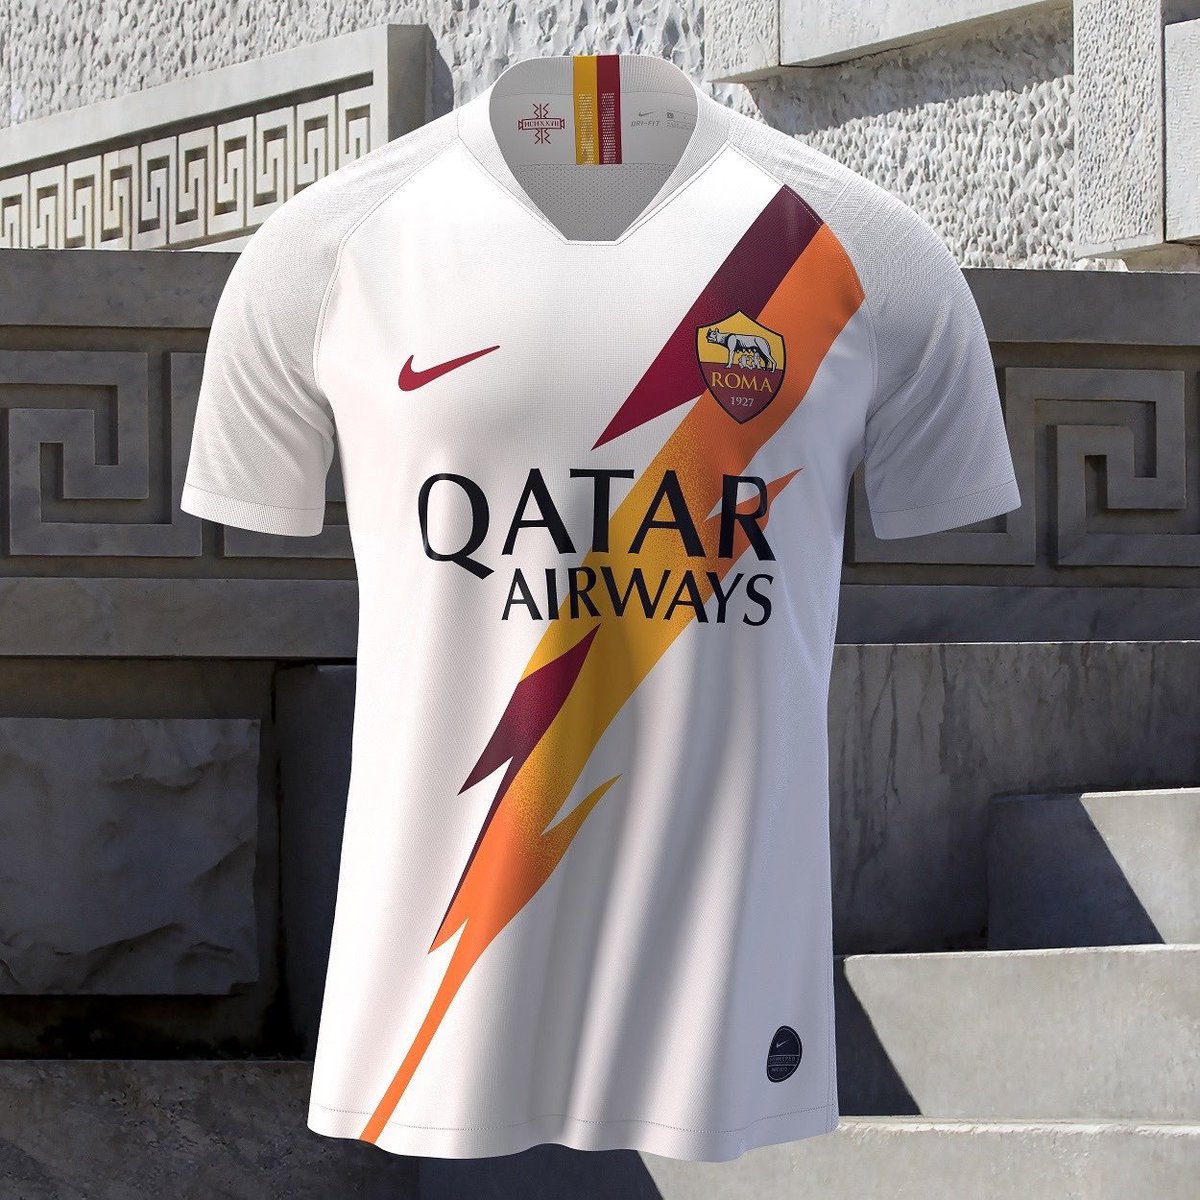 Maillot foot 2010 auf Twitter: "Le nouveau maillot extérieur Nike AS Roma  pour la saison 2019/2020 !… "